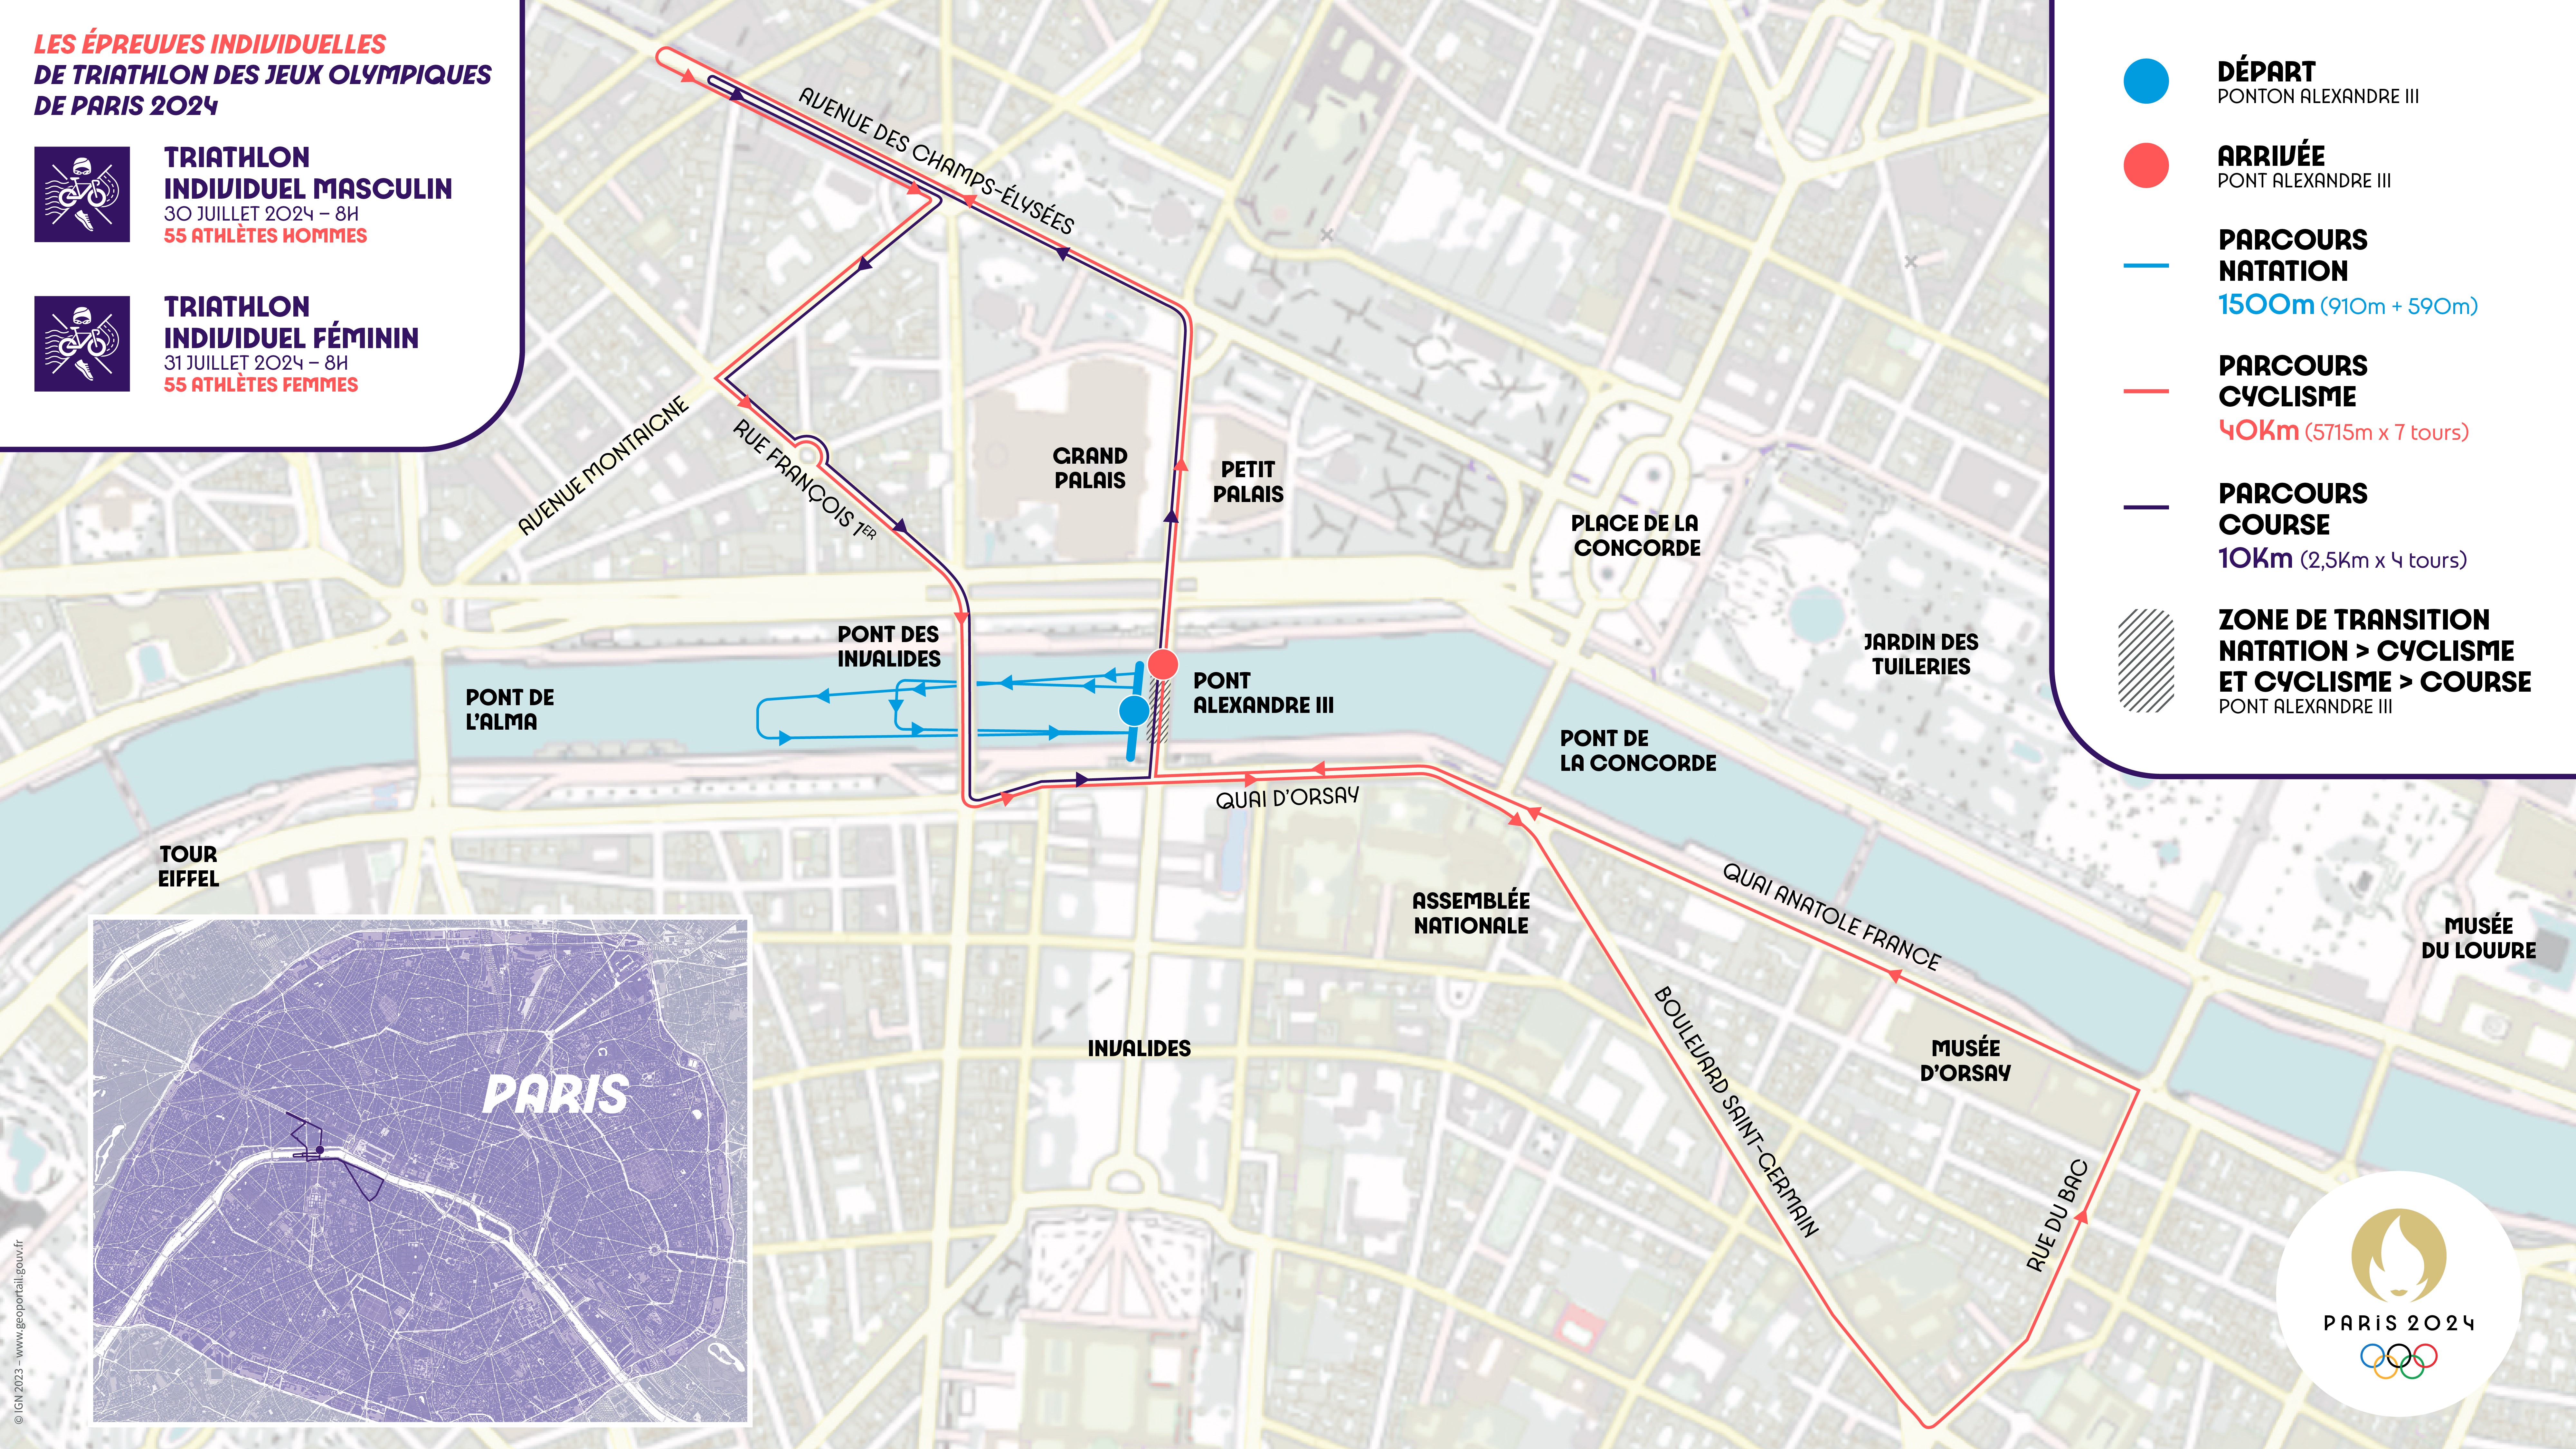 Le parcours de l'épreuve individuelle de triathlon aux Jeux Olympiques de Paris 2024 (Crédit image : Paris 2024)